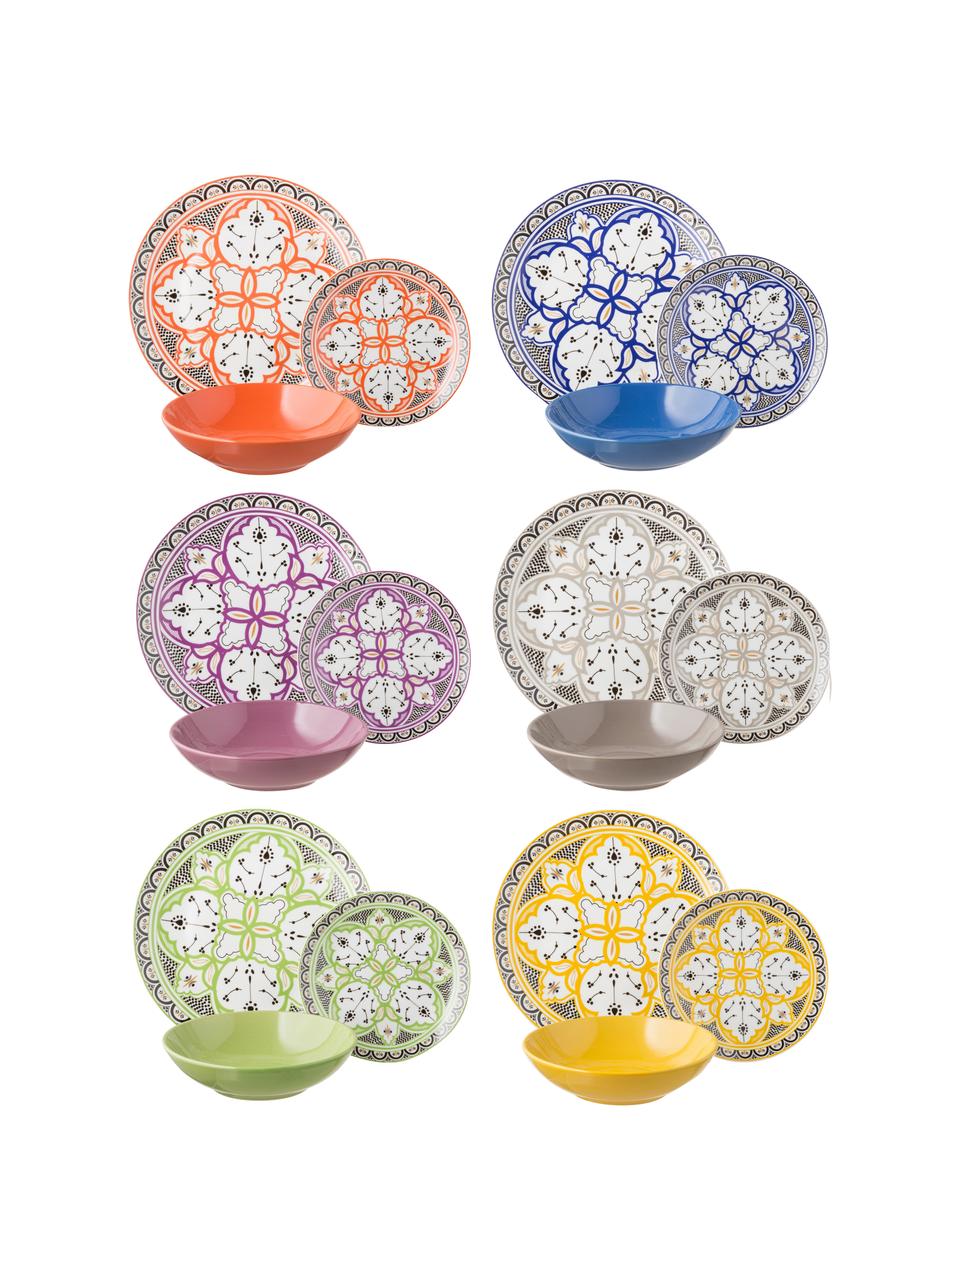 Sada vzorovaného nádobí Marocco, pro 6 osob (18 dílů), Více barev, Sada s různými velikostmi